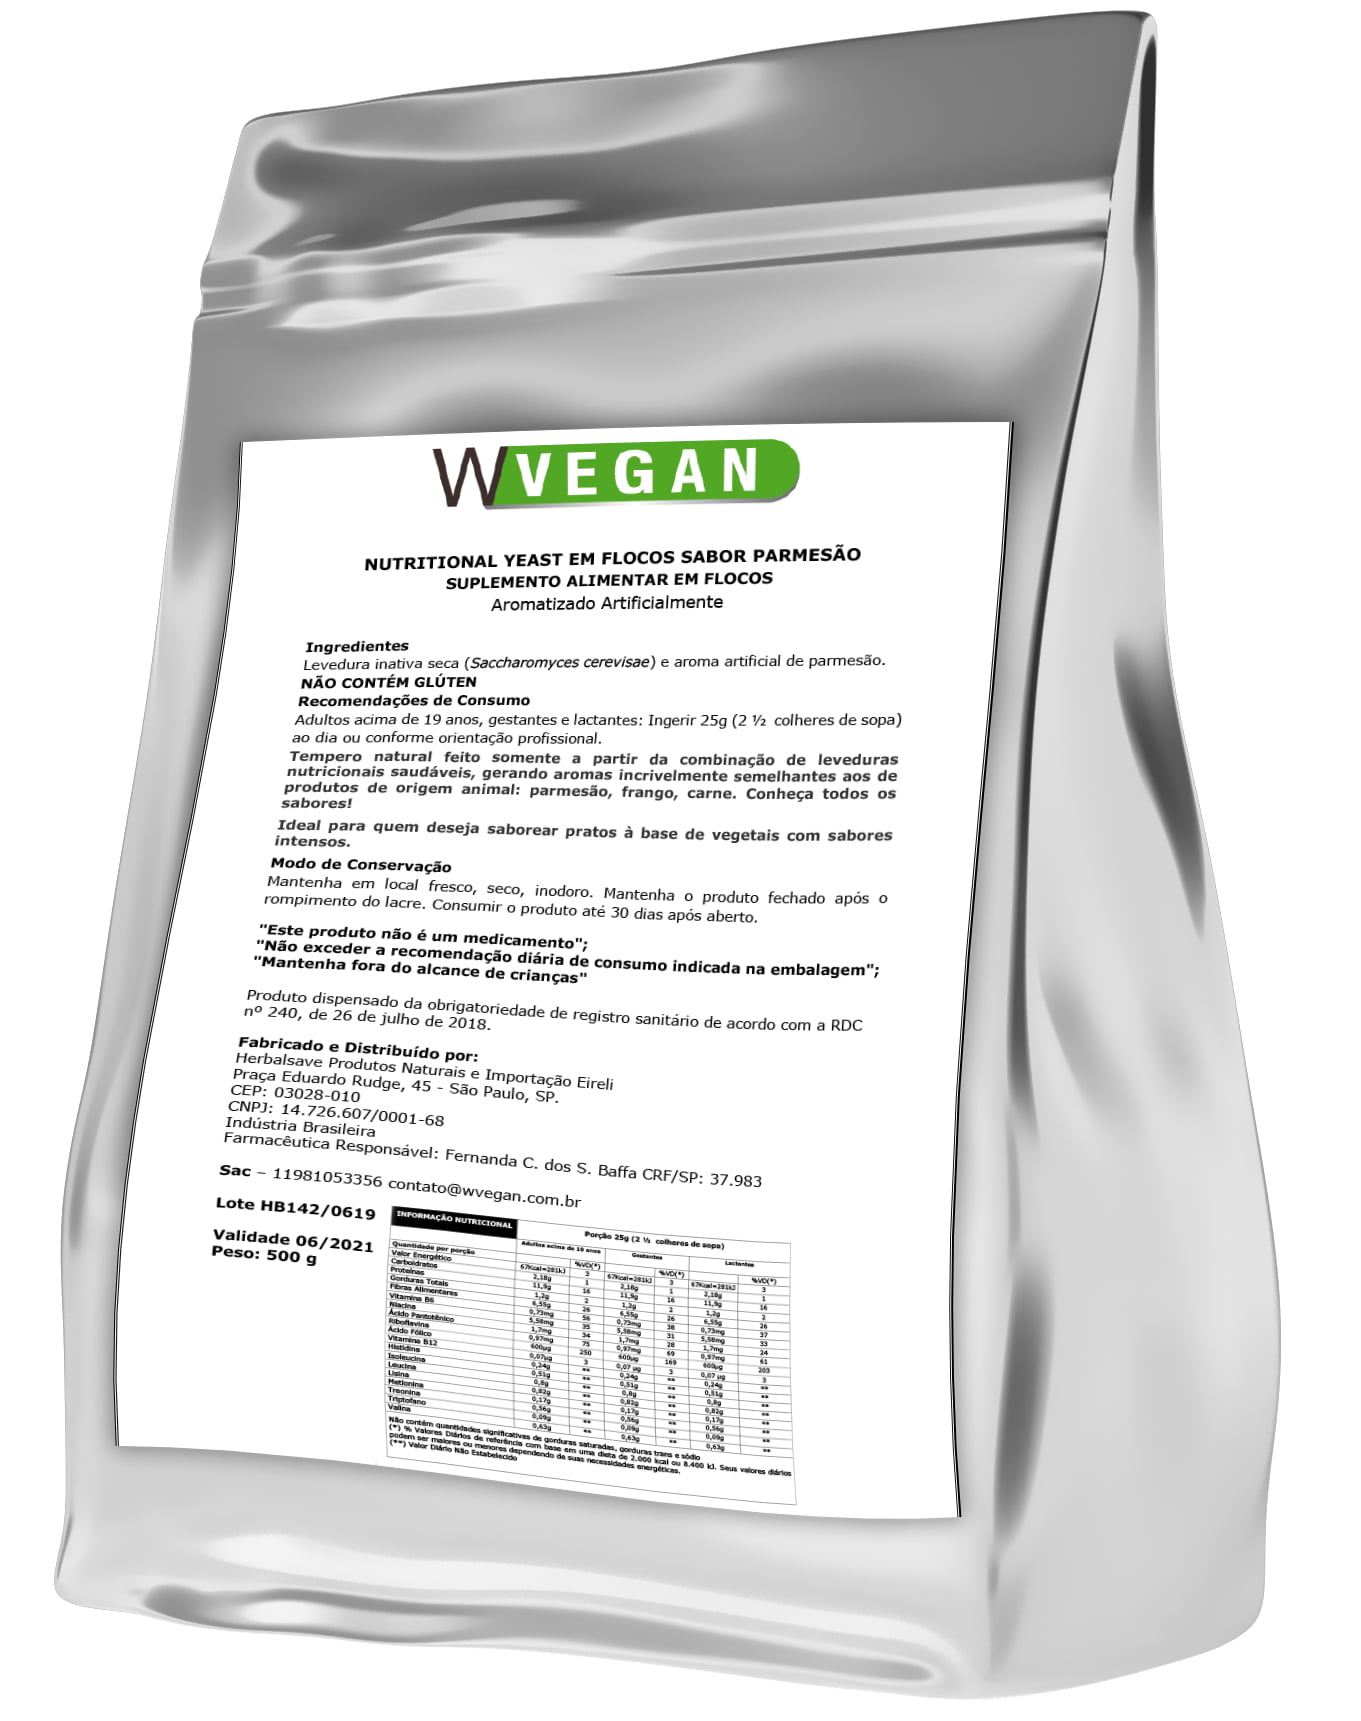 Nutritional Yeast 500g Parmesão - Temos a maior Linha de Suplementos a um excelente custo beneficio